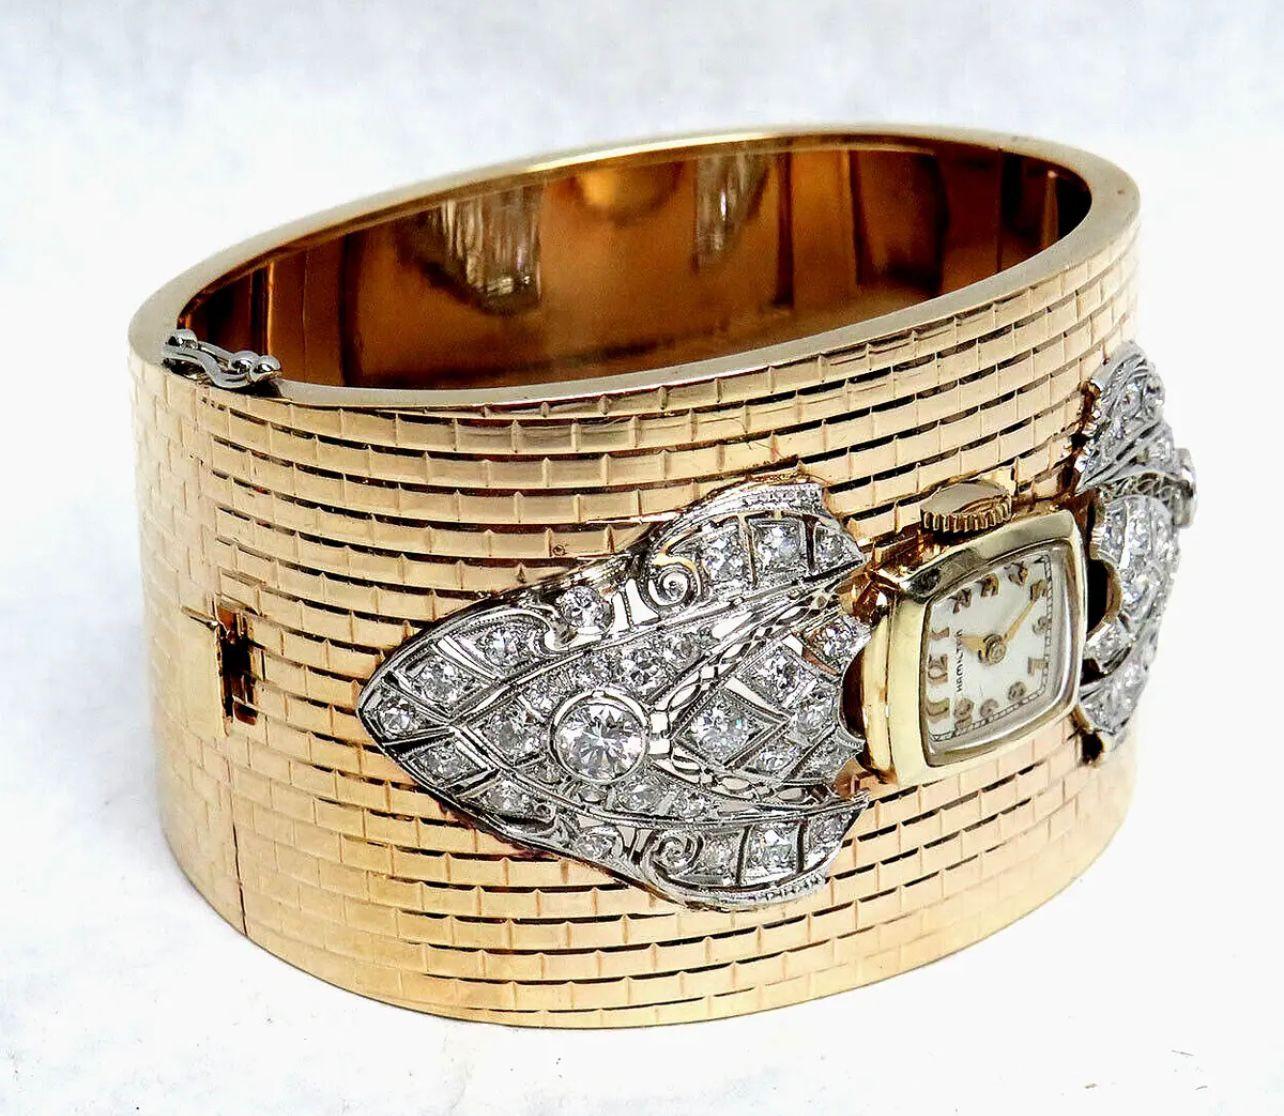 Montre Vintage Hamilton enchâssée dans un bracelet manchette en or 14k et décoré de diamants.
Période : 1950s
Mesures : 
longueur : 15 cm
largeur : 4 cm
Condit : très bien. 

........Informations complémentaires ........

- La photo peut être